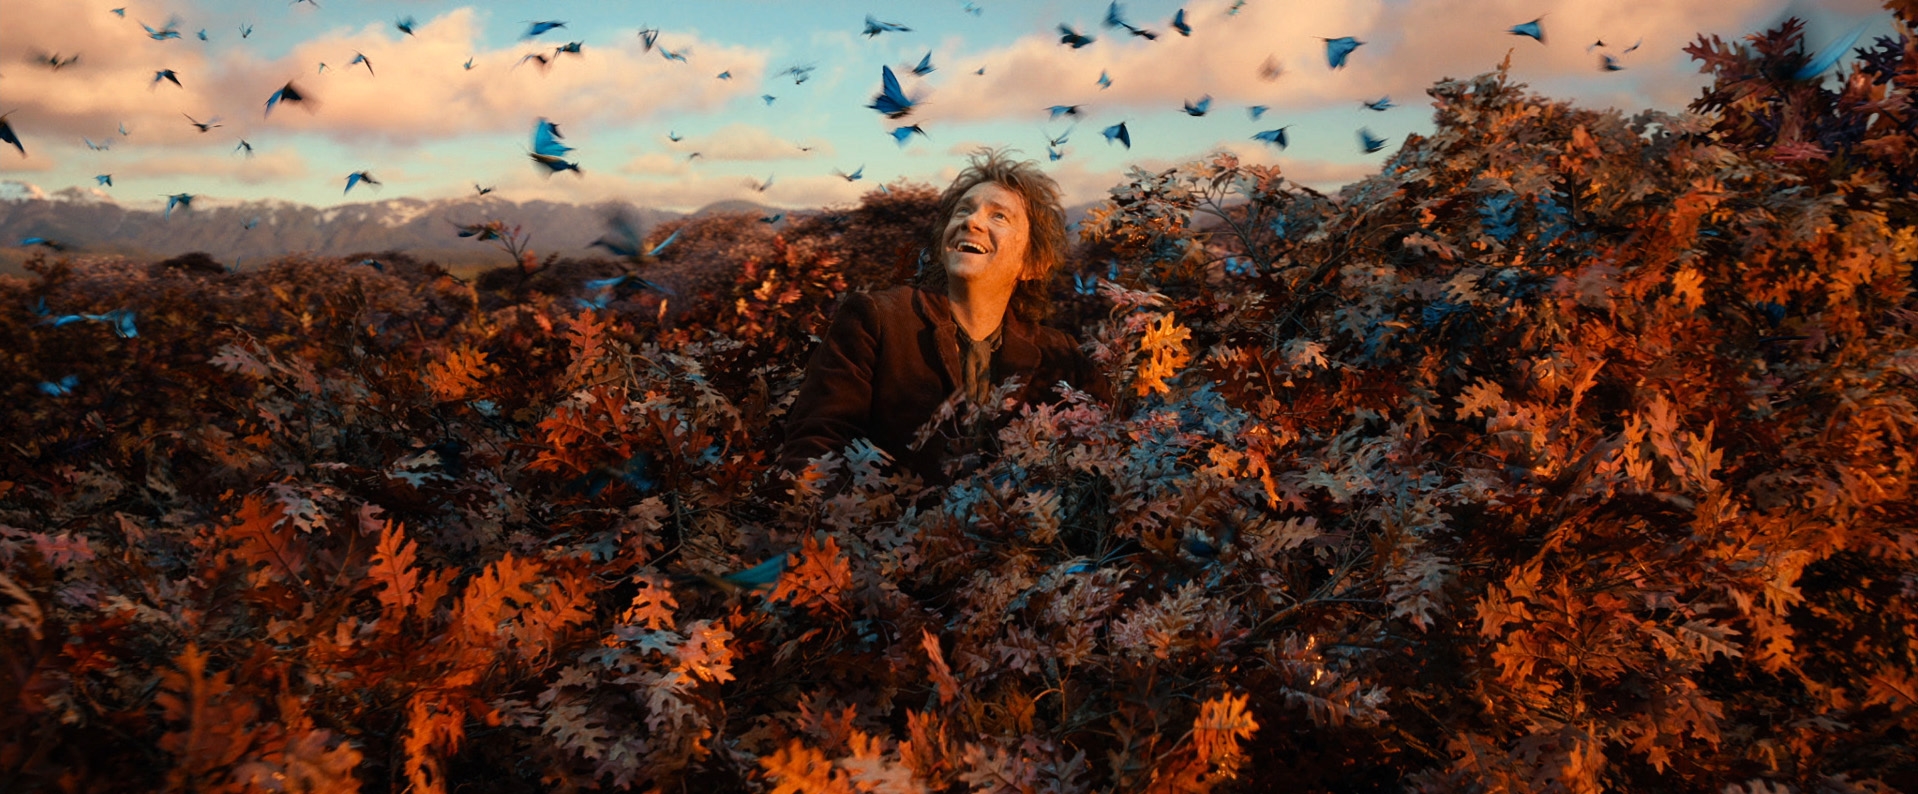 Image du film Le Hobbit : la désolation de Smaug db3b4601-21db-47ef-bbbd-963e51cfd70b